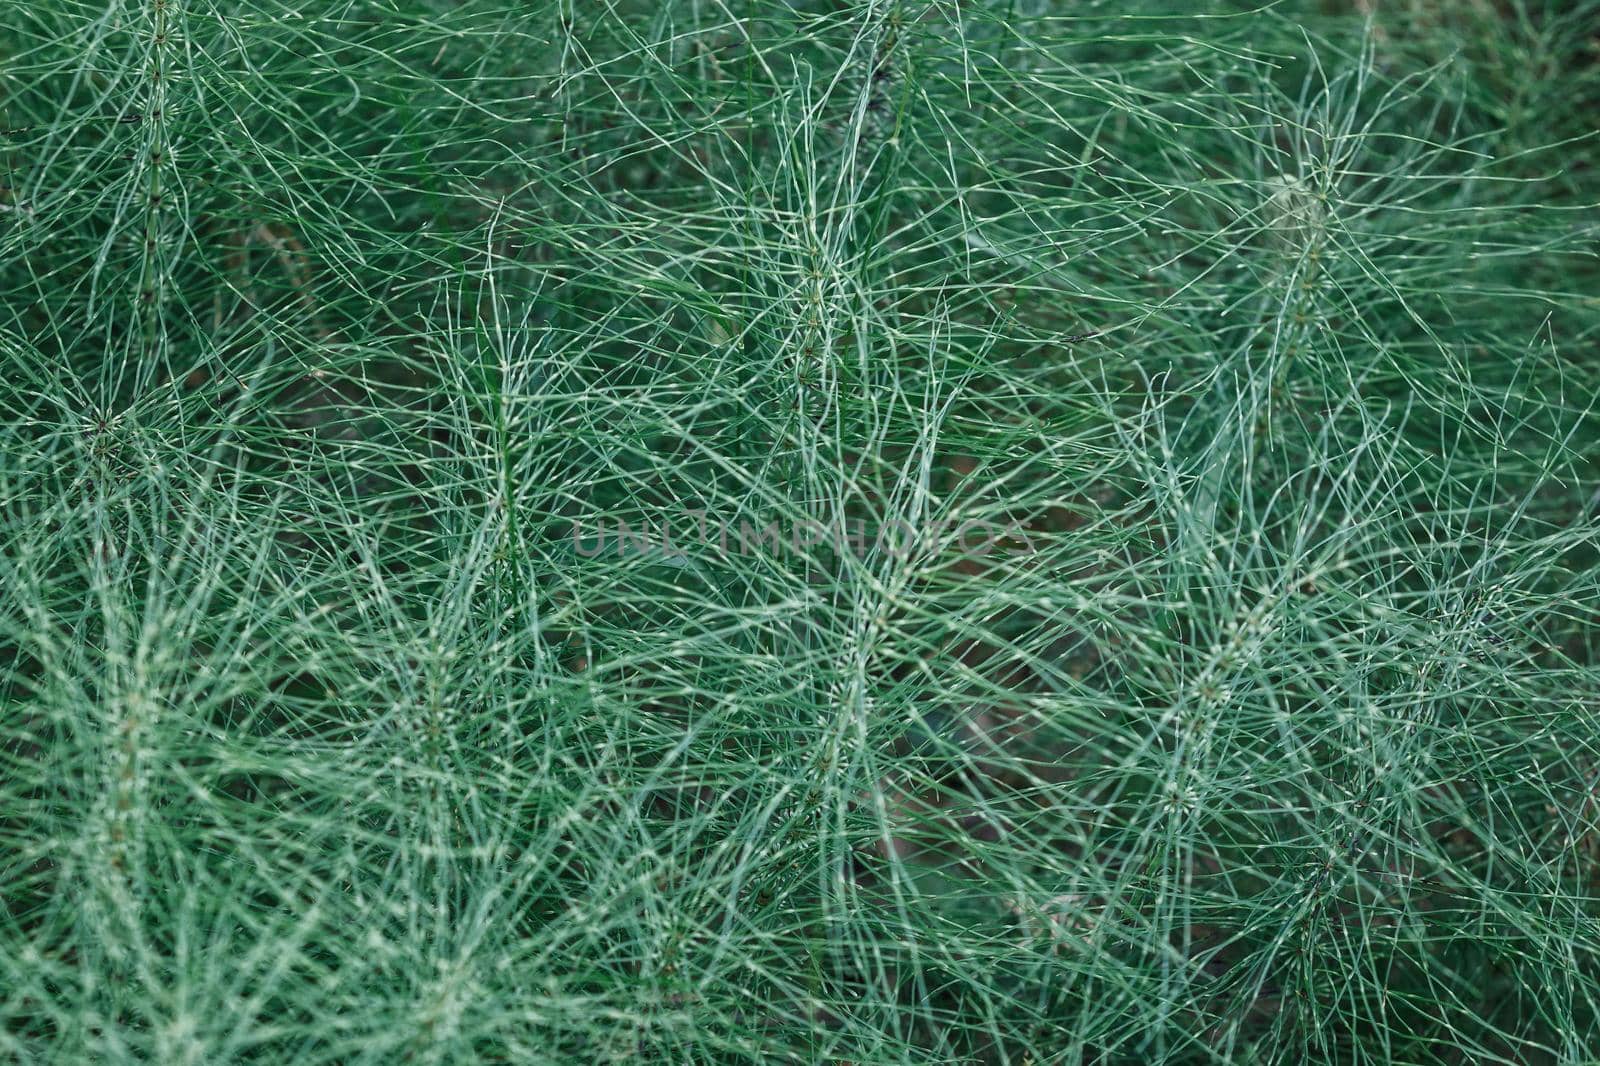 Natural horsetail herb background. Riesen-Schachtelhalm Equisetum telmateia by Lincikas